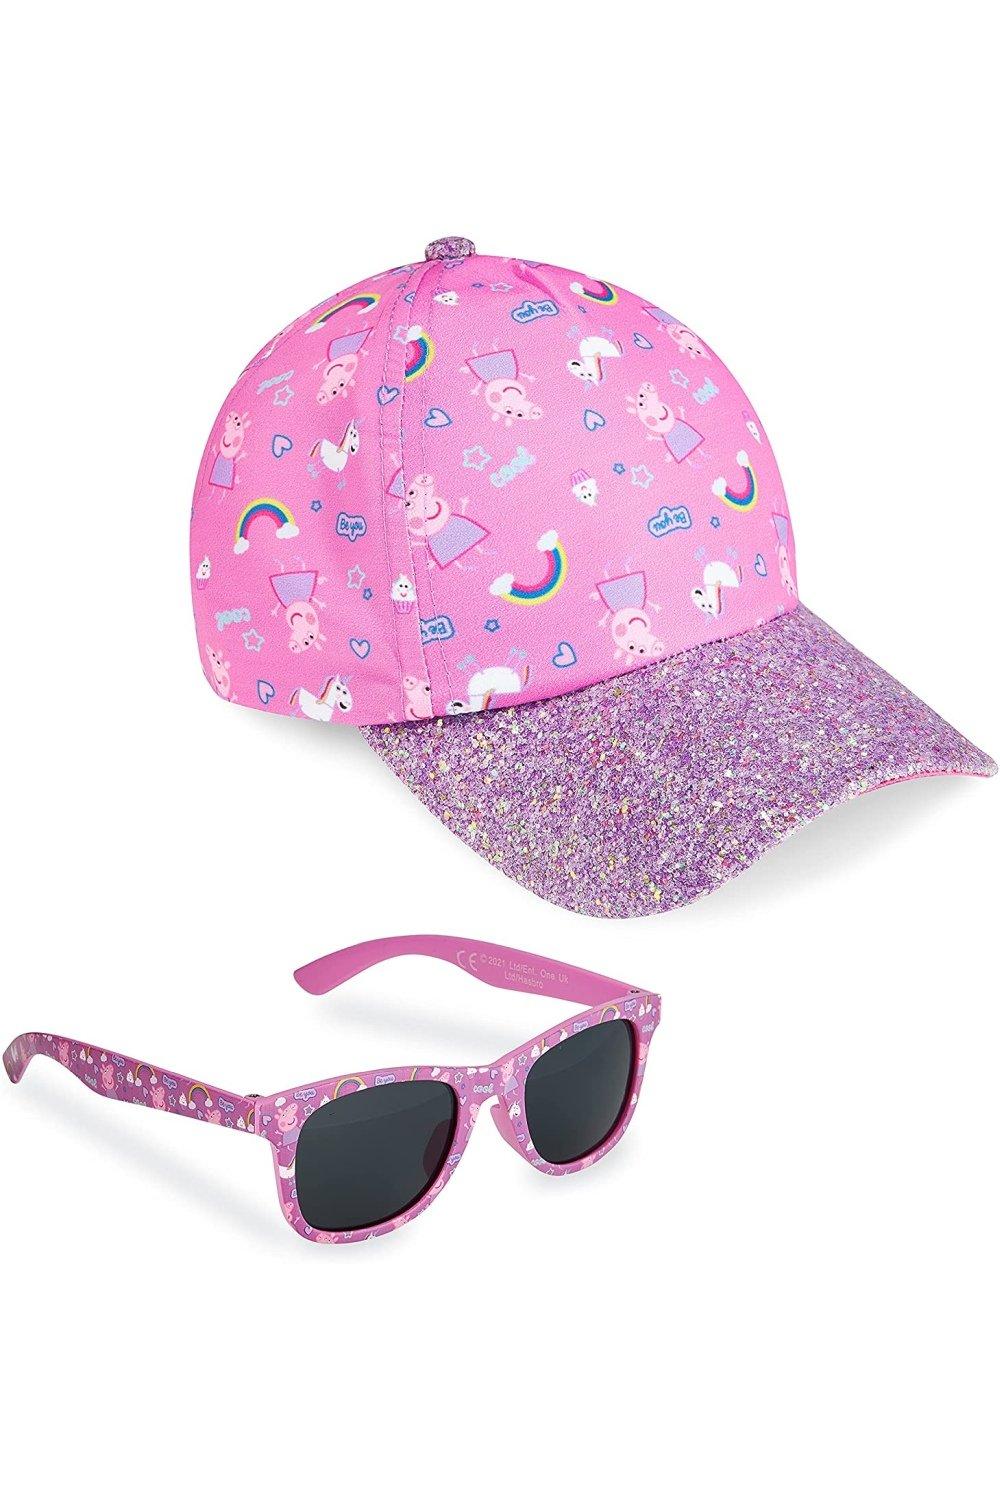 Кепка и солнцезащитные очки Peppa Pig, розовый объемная аппликация peppa pig из eva свинка пеппа летние развлечения